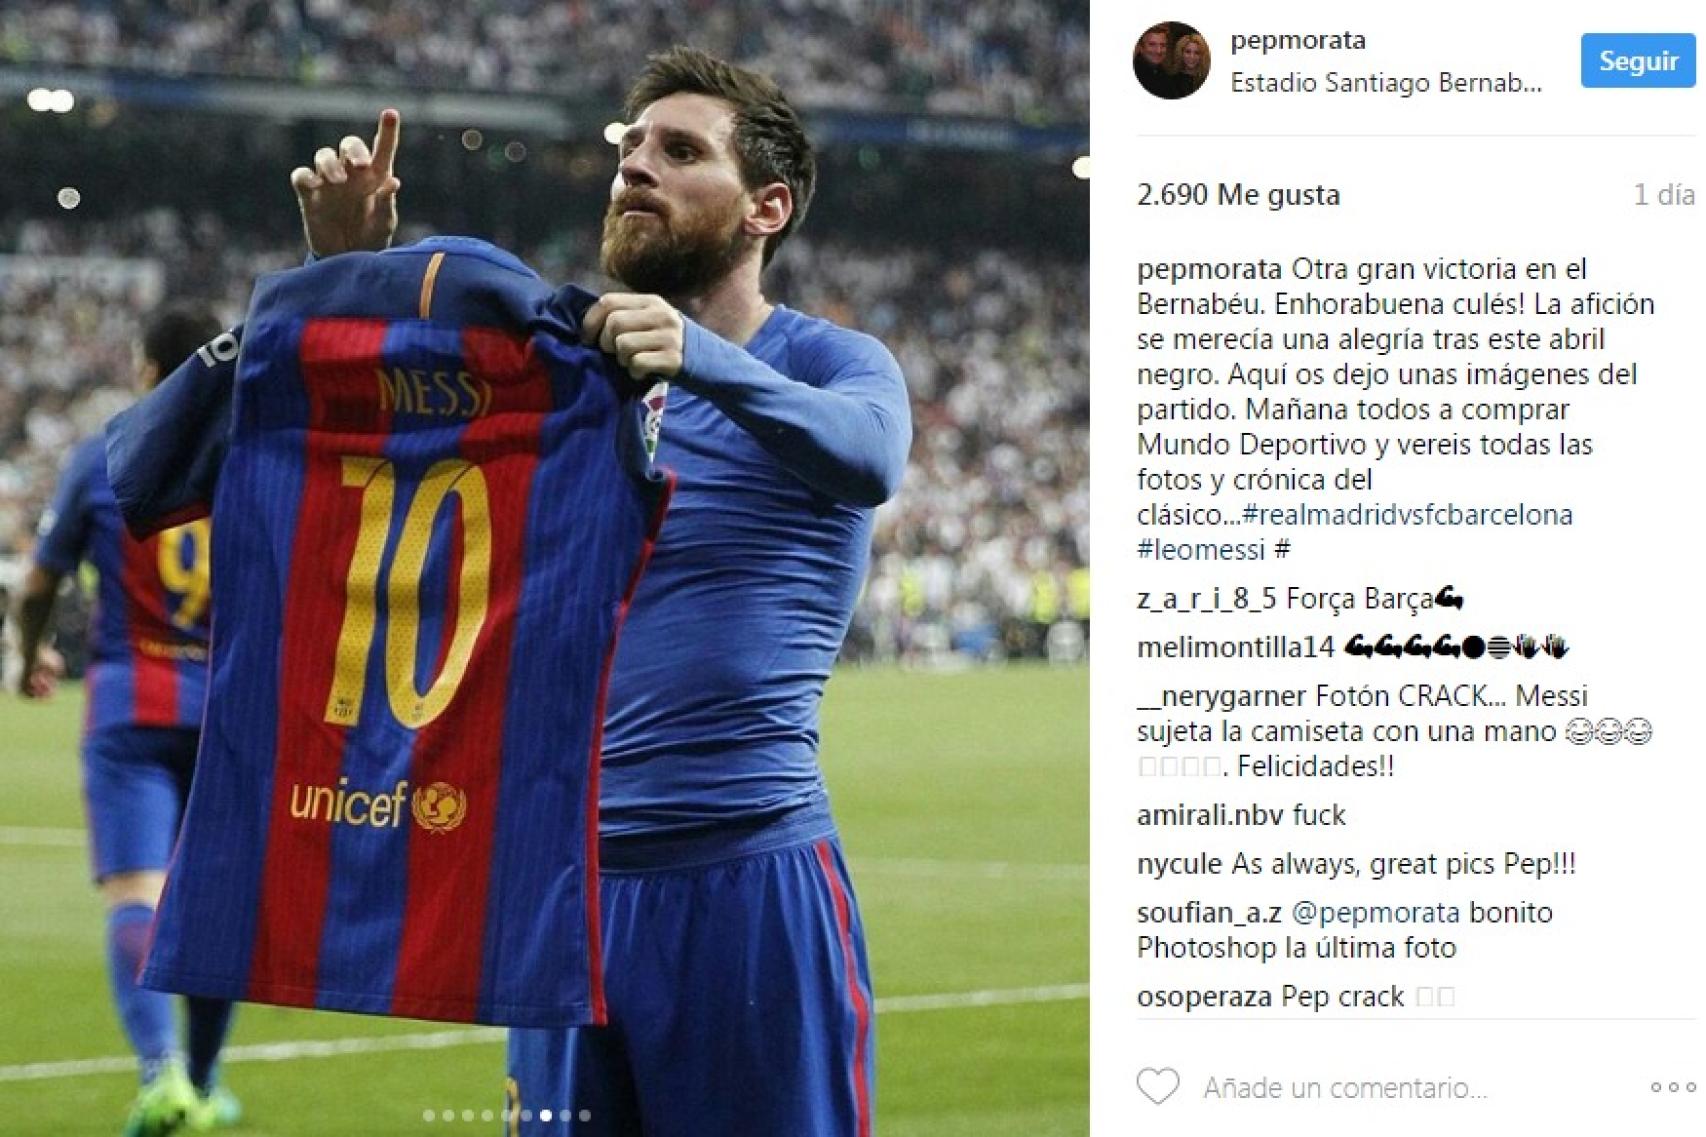 Tuve suerte de estar en sitio oportuno": así tomó la foto 'mágica' de Messi con su camiseta